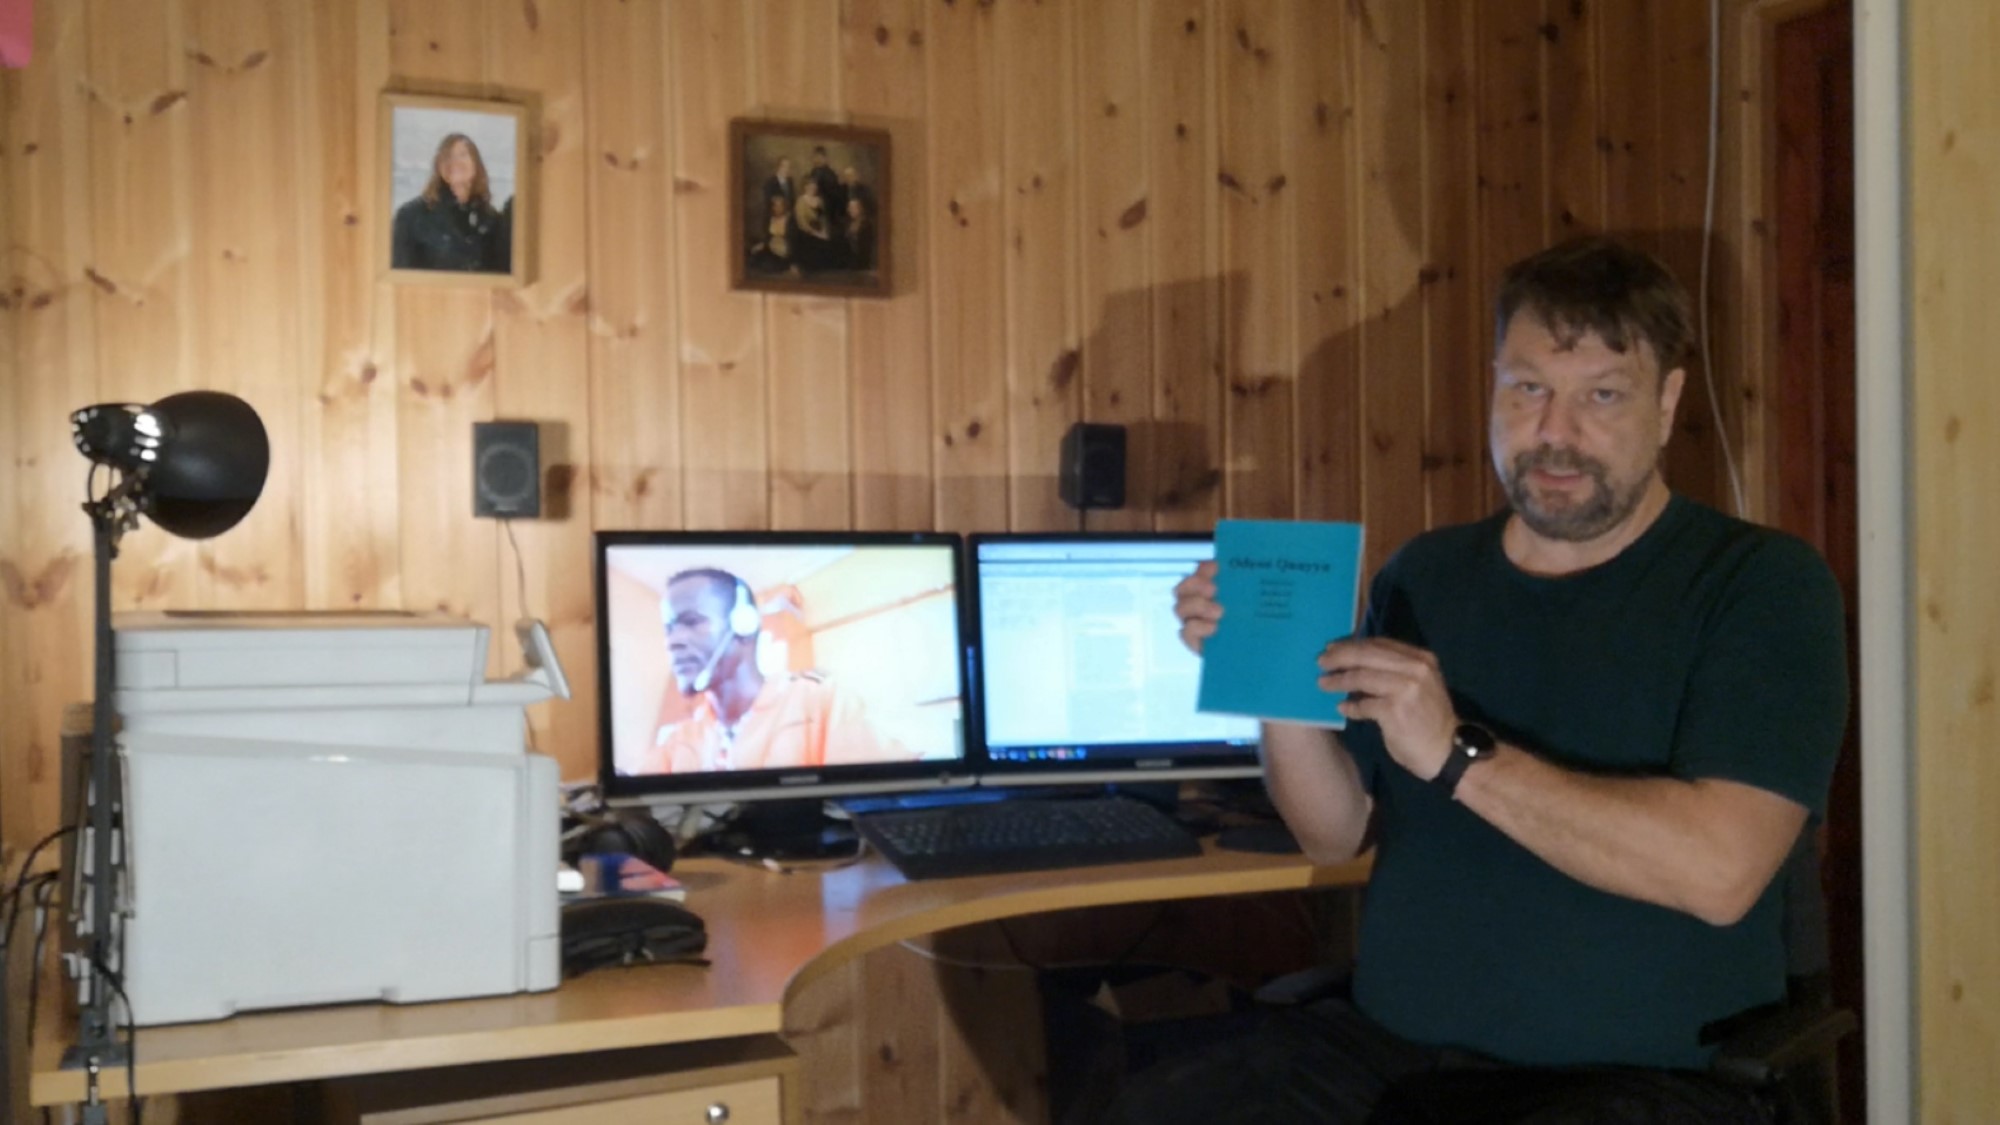 Skjermdump av video, Fredrik foran PC på hjemmekontor